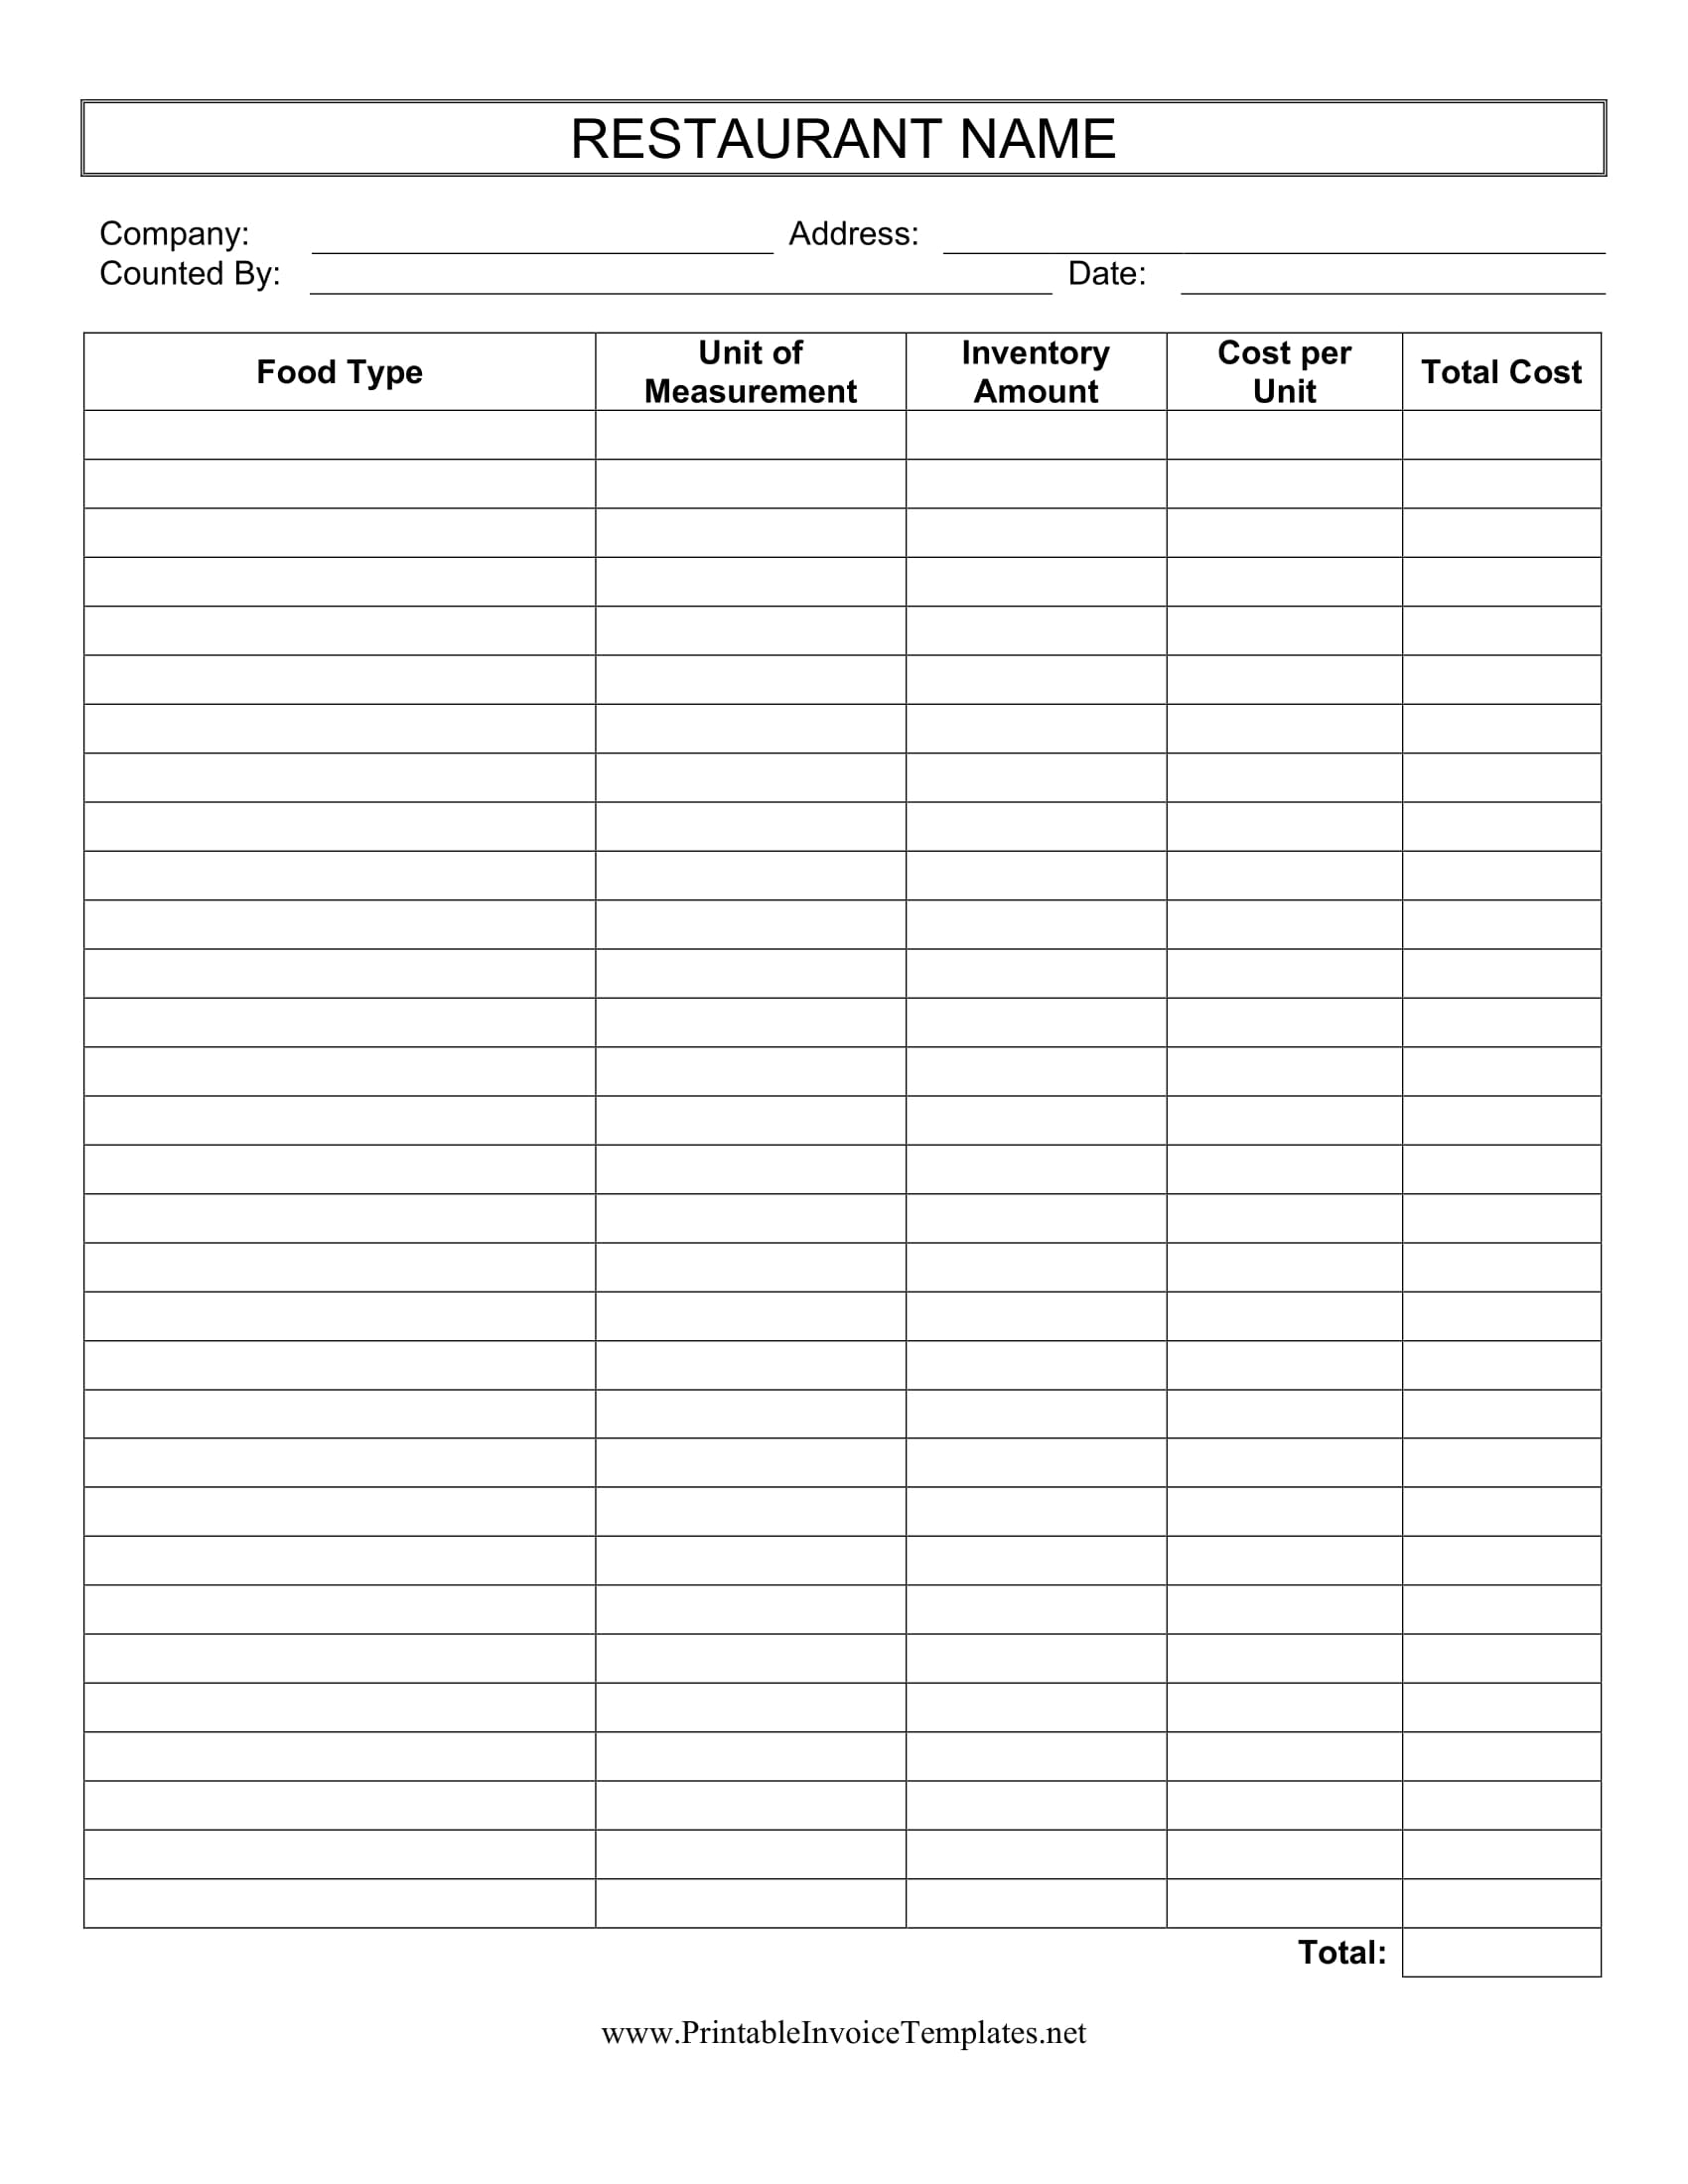 restaurant inventory checklist form 1